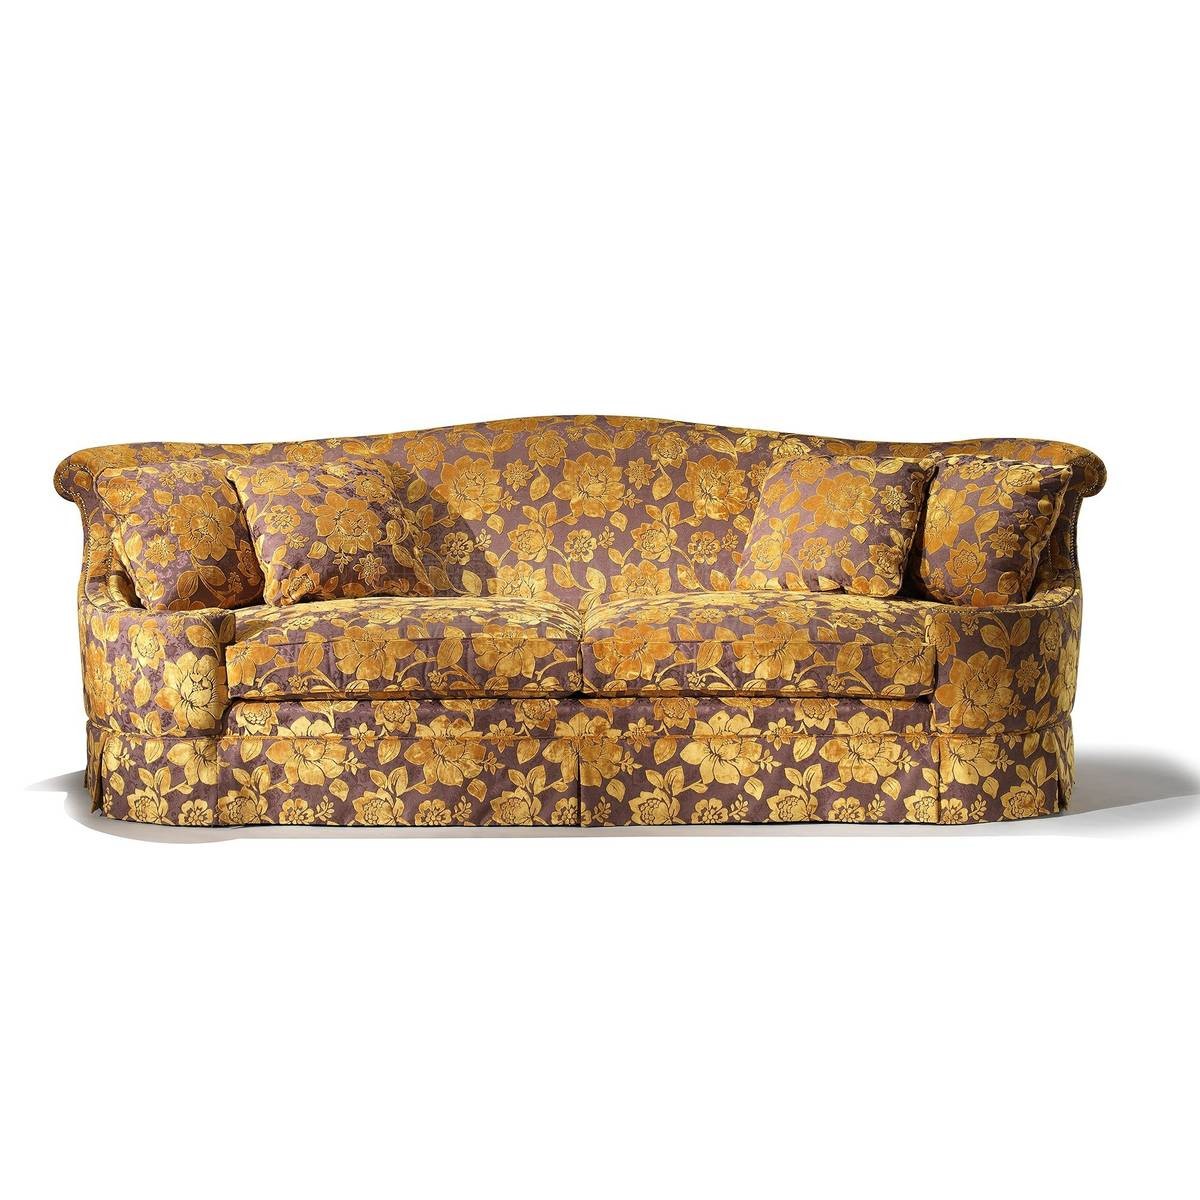 Прямой диван The Upholstery/D421 из Италии фабрики FRANCESCO MOLON